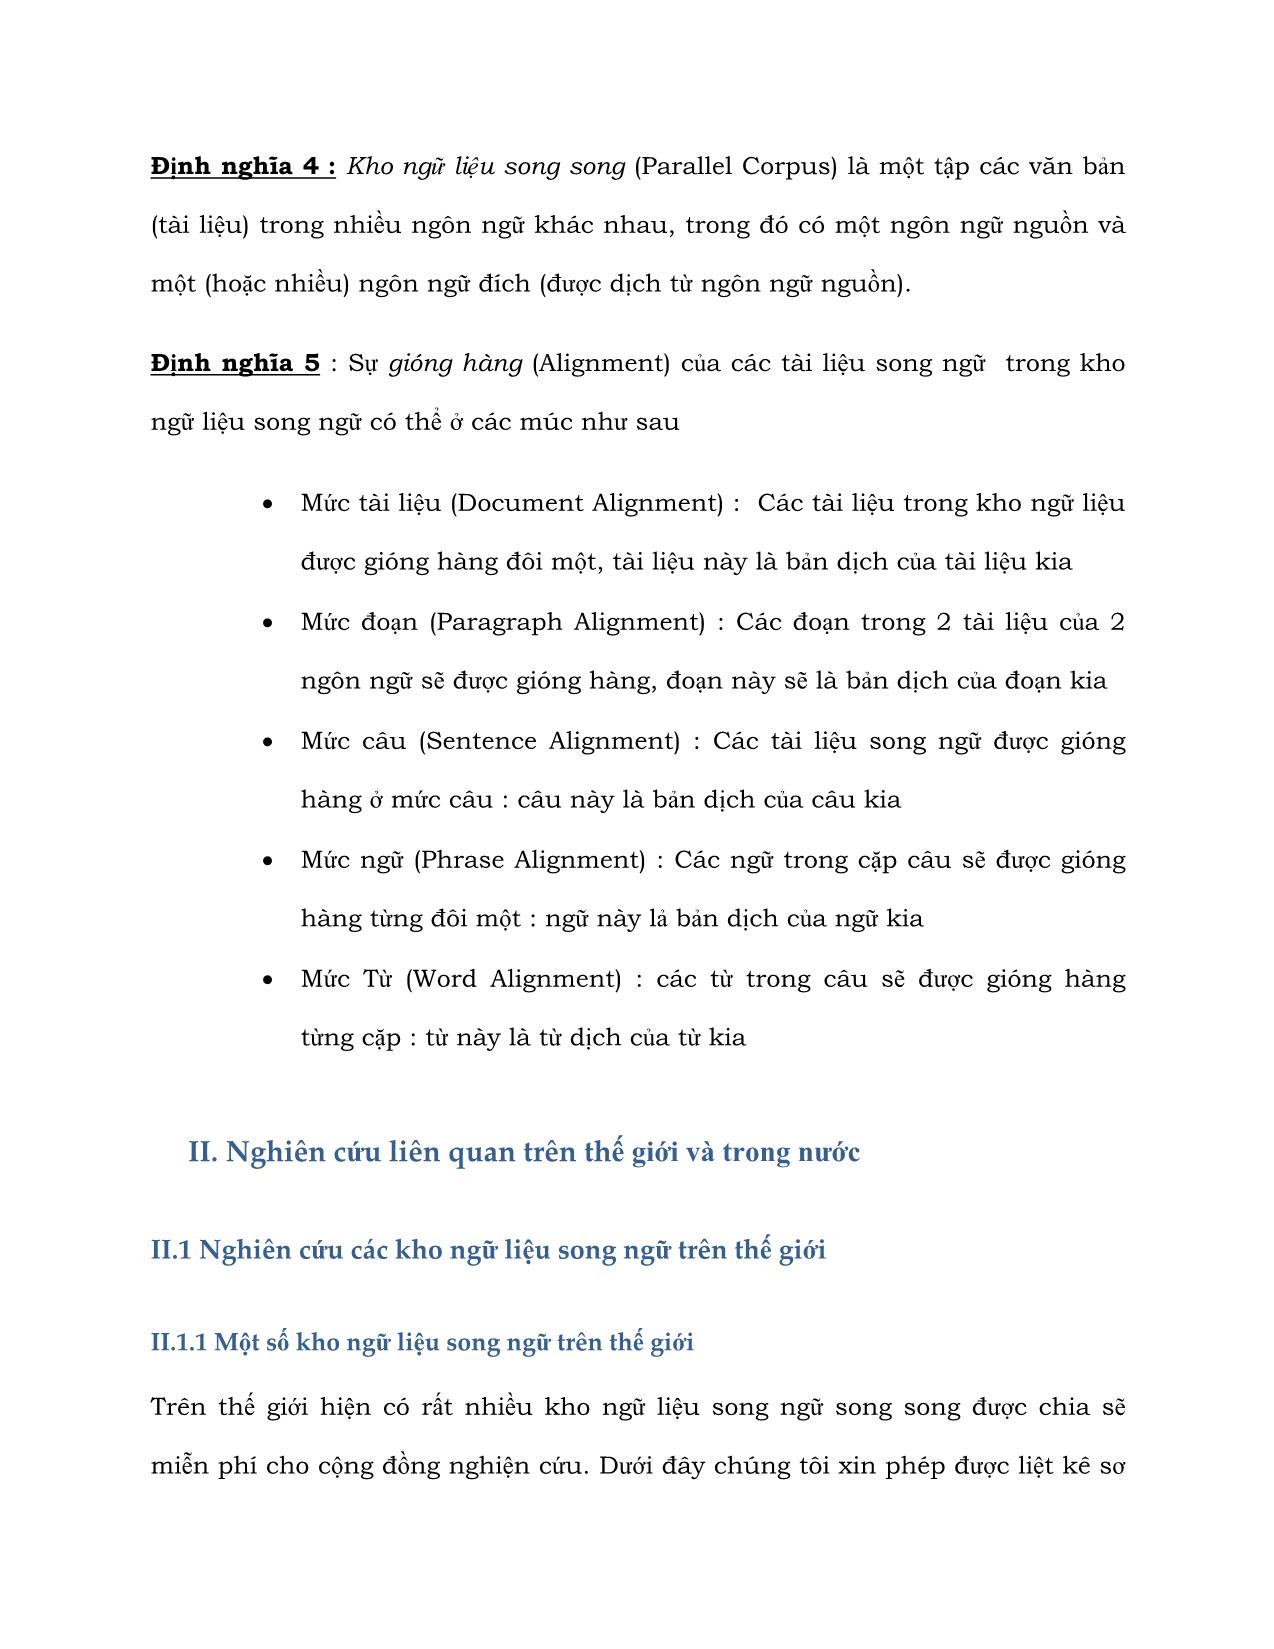 Báo cáo kỹ thuật Xây dựng kho ngữ liệu song ngữ Anh - Việt trang 6